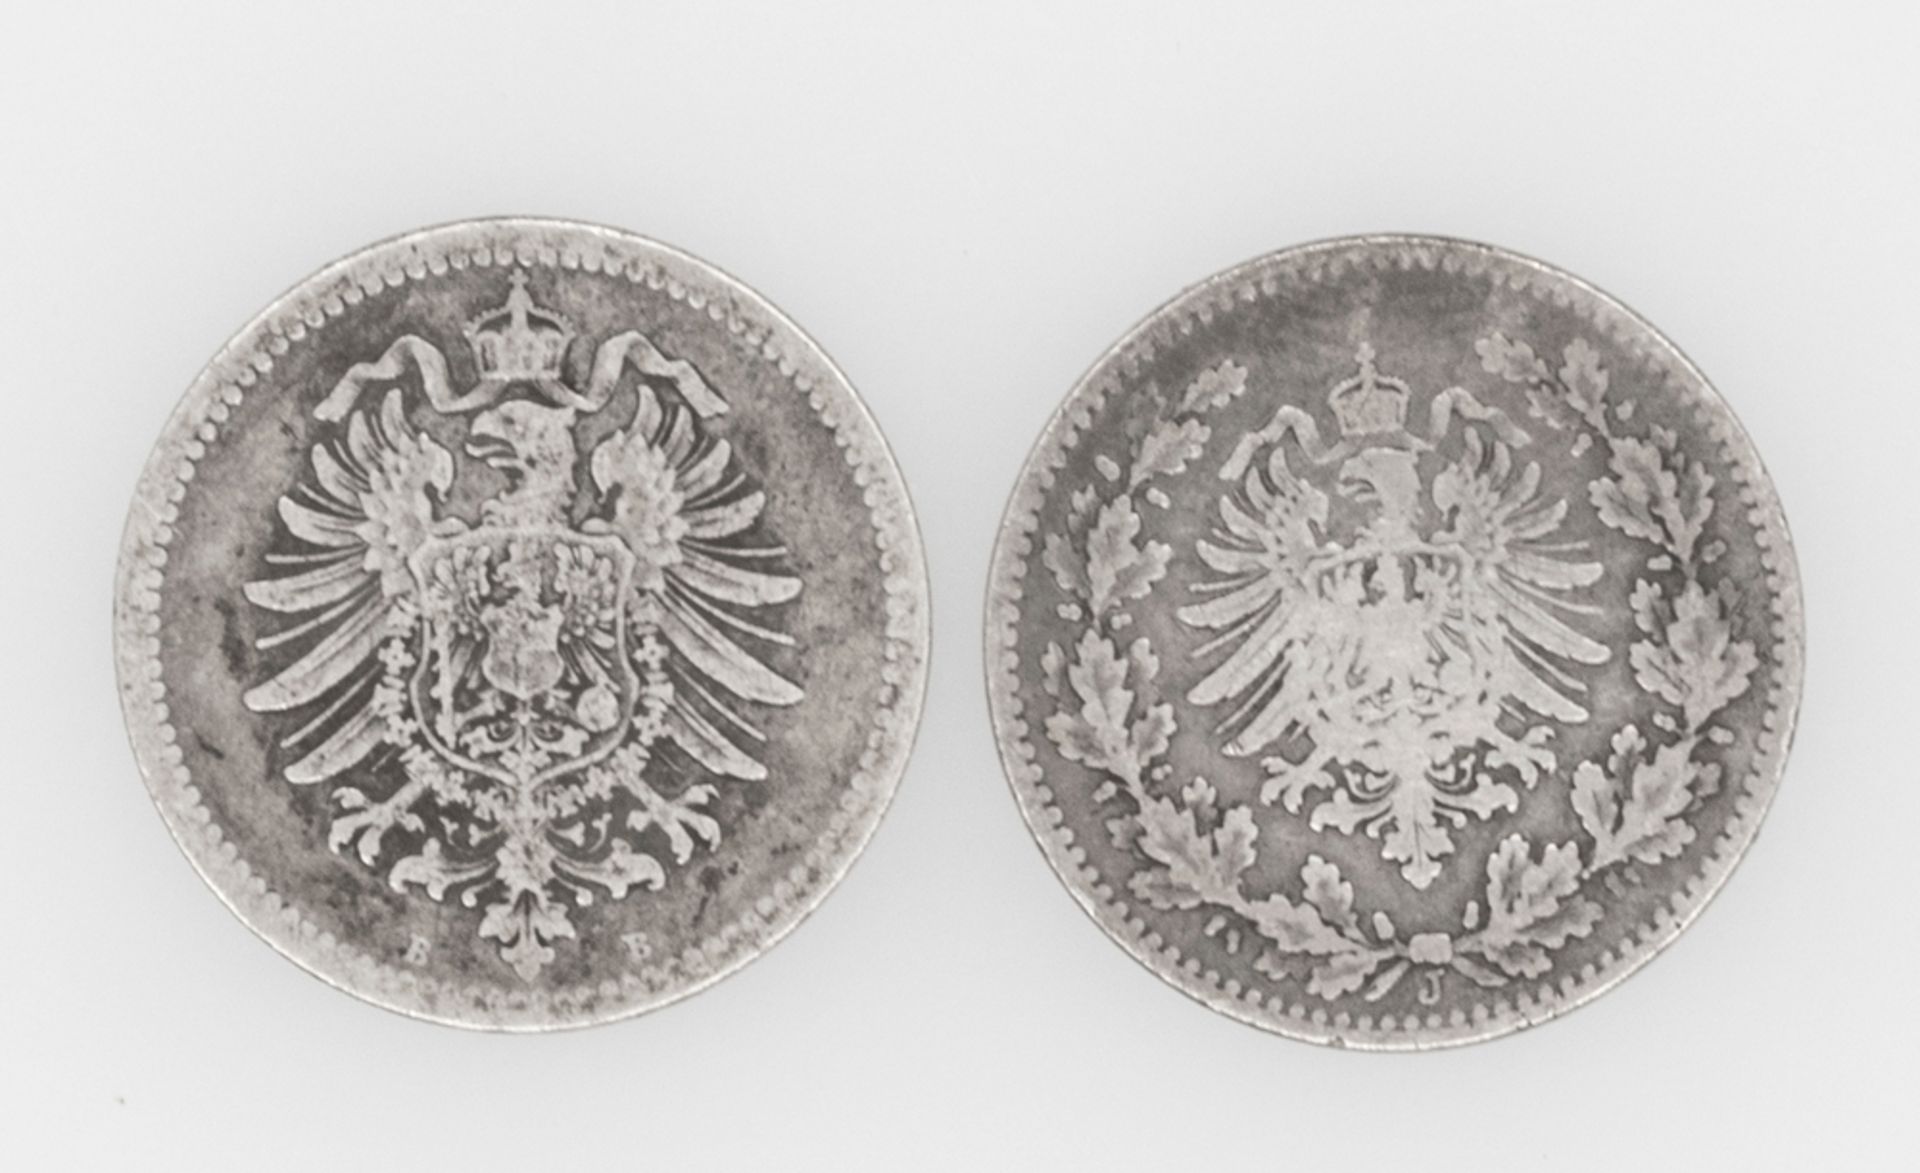 Deutsches Kaiserreich, 2 x 50 Pfennig - Münzen: 1875 B und 1877 J. Erhaltung: ss. - Image 2 of 2